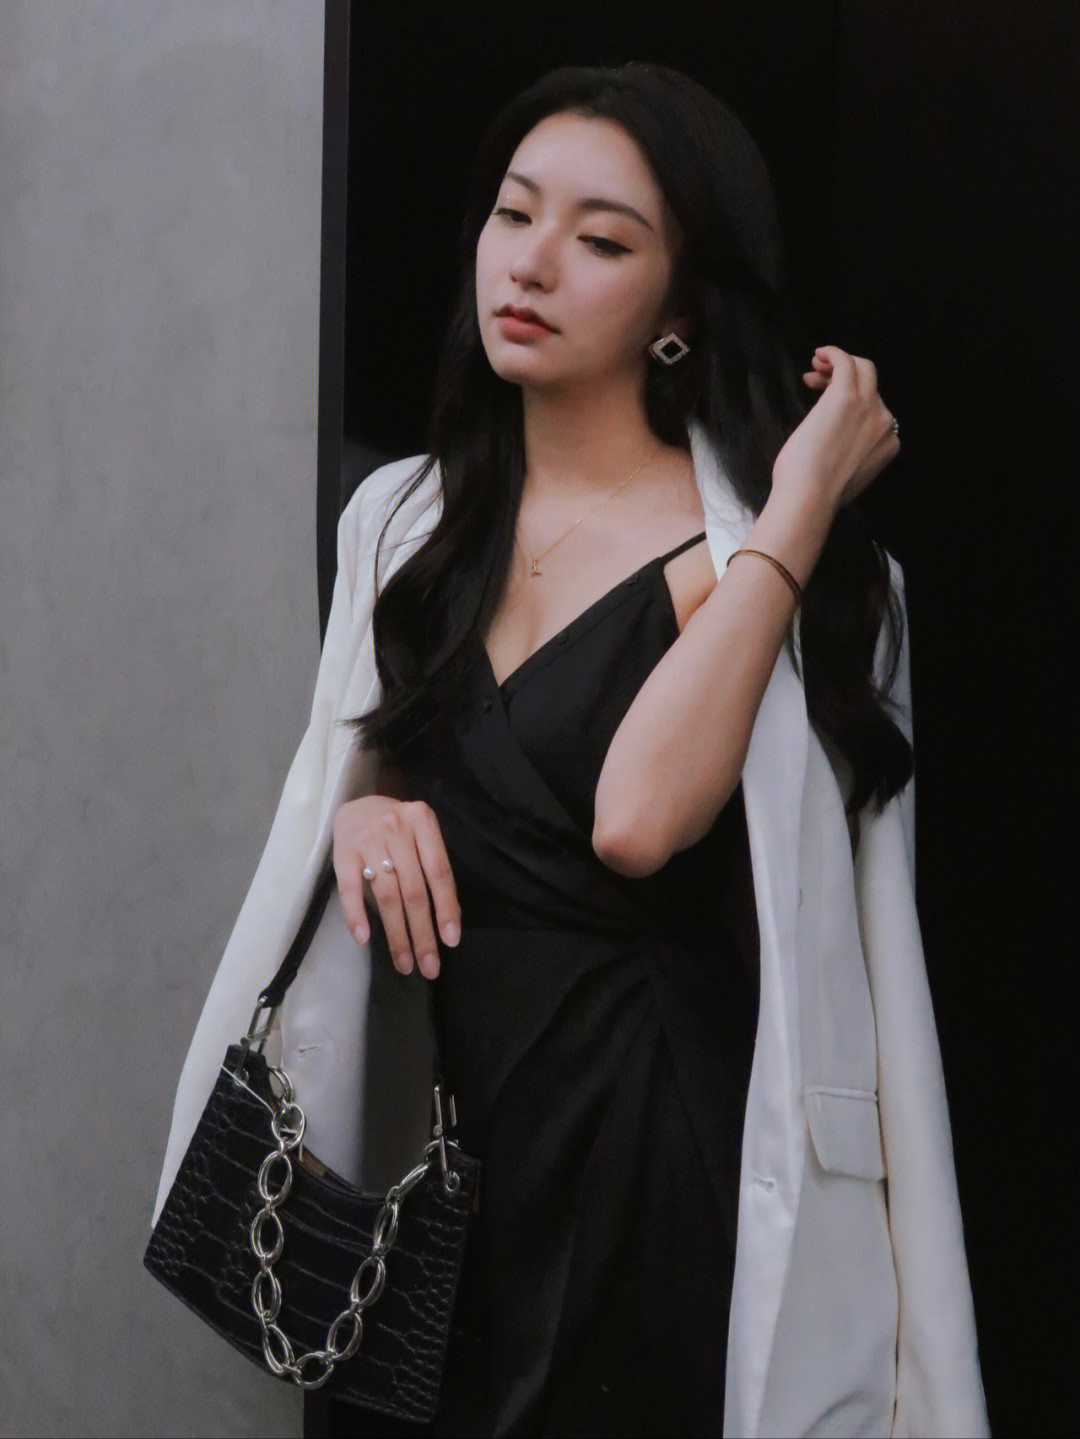 黑色缎面吊带裙,搭配稍大的白色西装外套选择有垫肩的西装会更具更